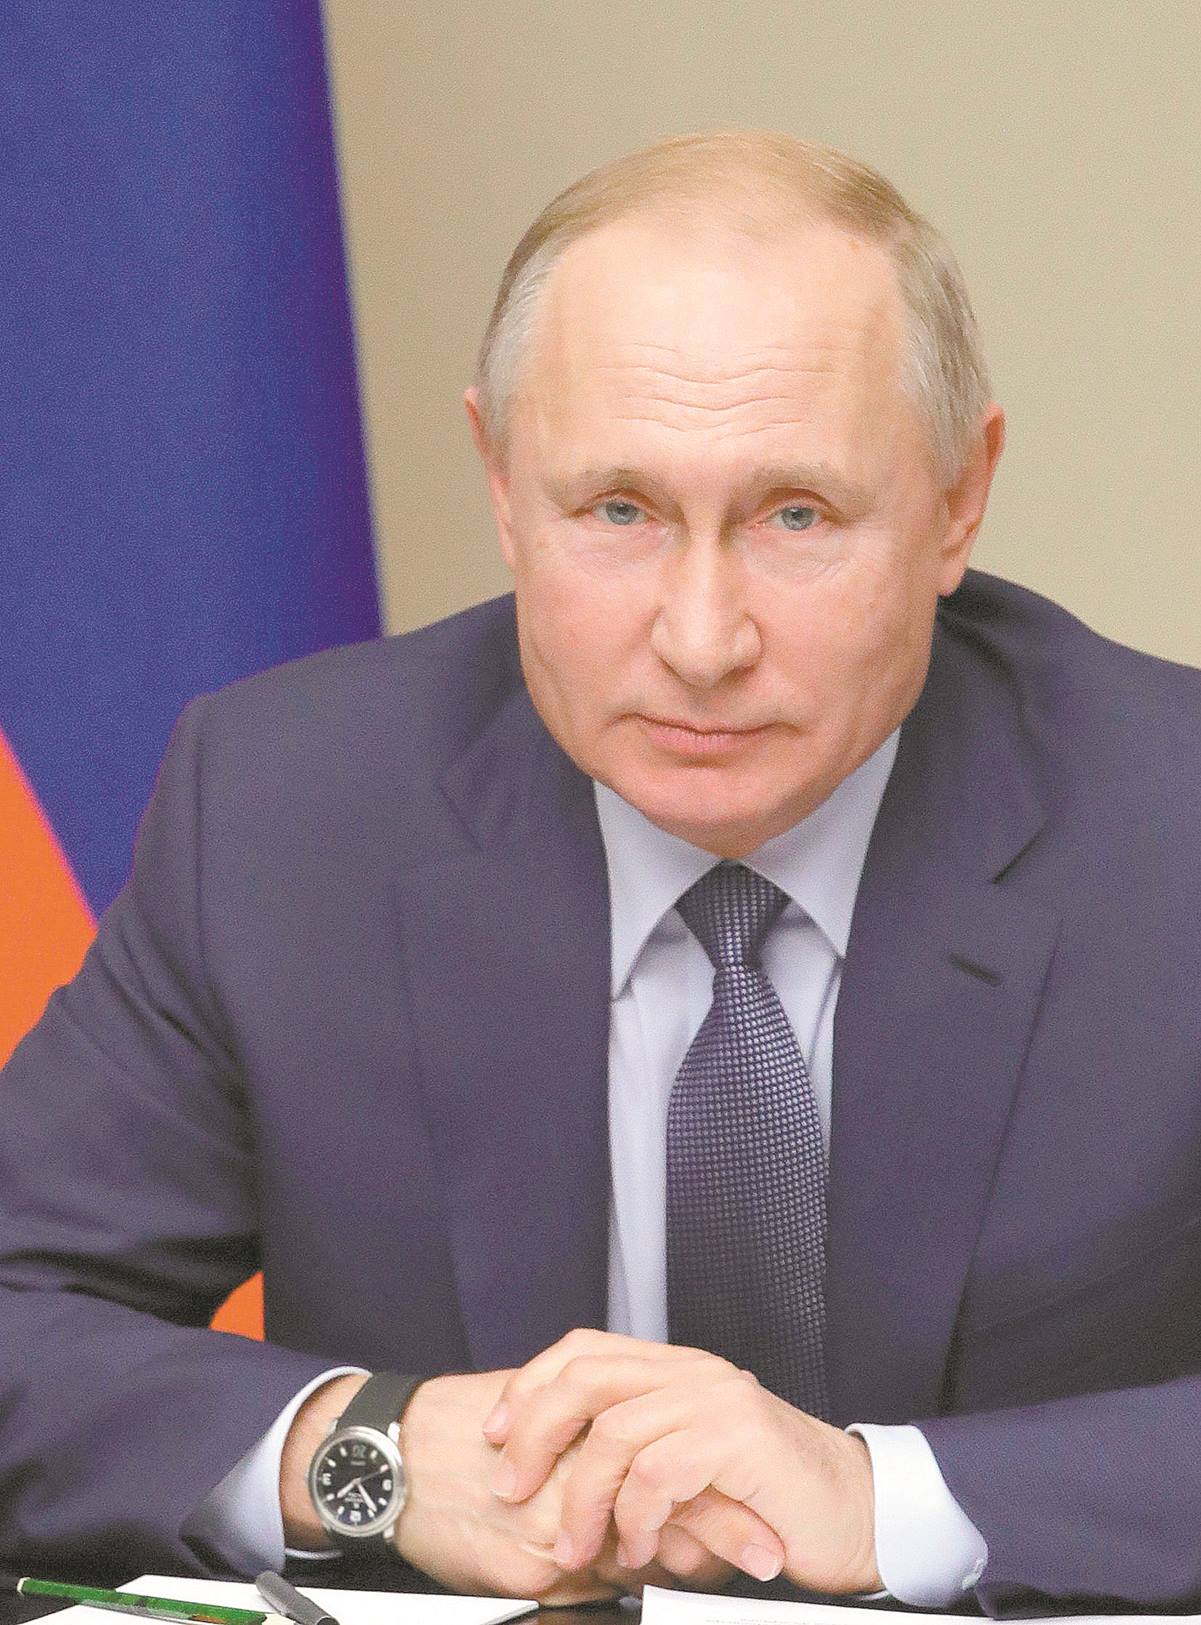 Putin busca limitar a dos mandato presidencial